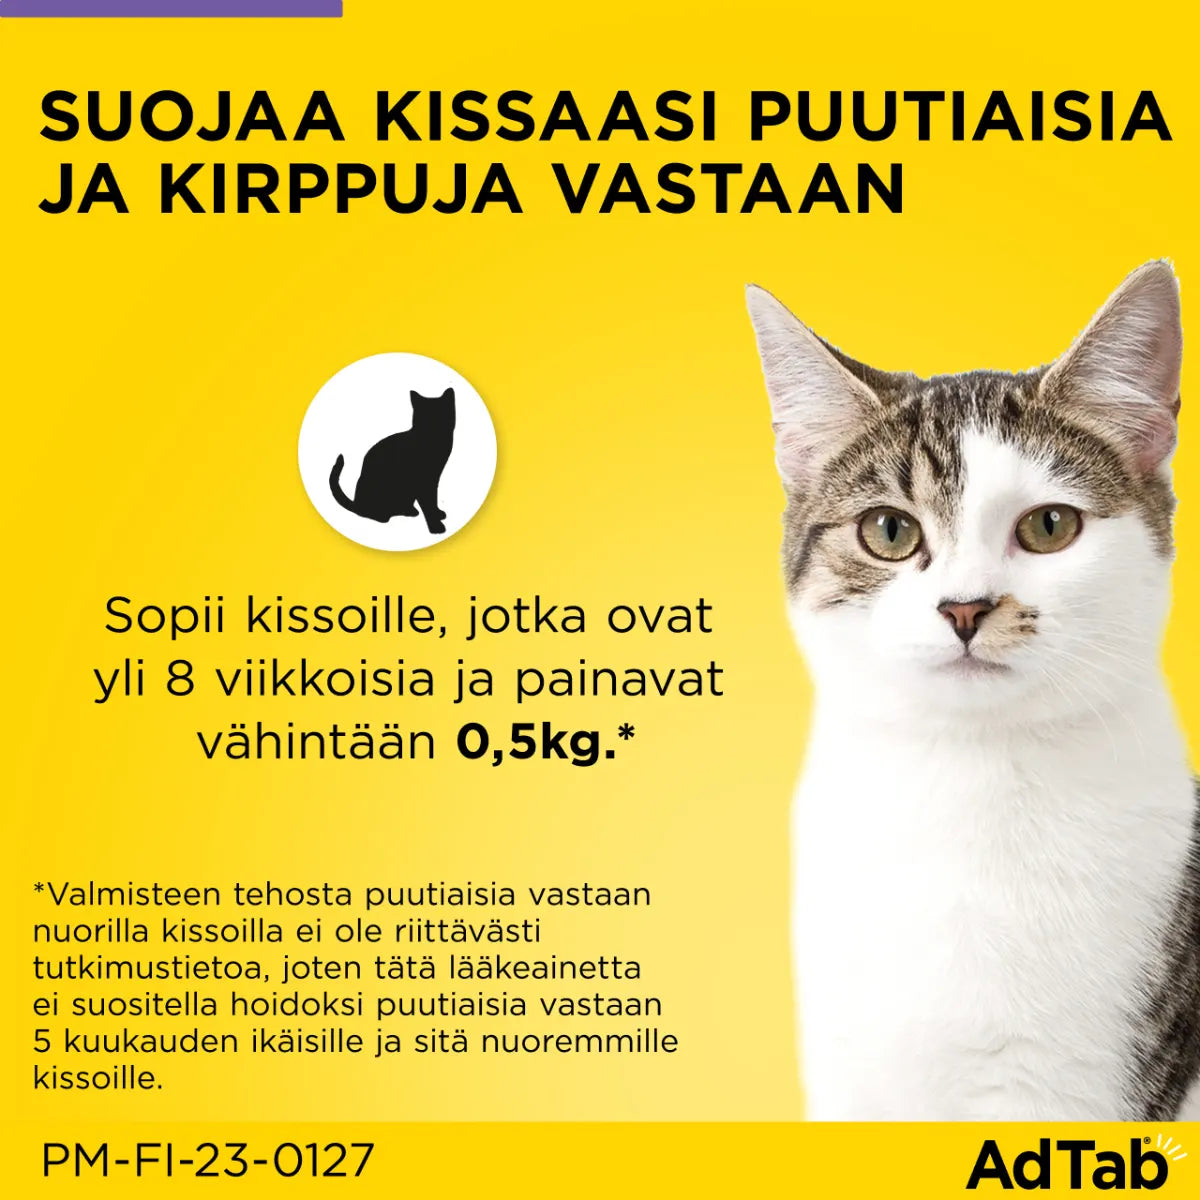 ADTAB 12 mg Vet purutabletti kissoille 0,5-2 kg 3 kpl suojaa puutiaisia ja kirppuja vastaan